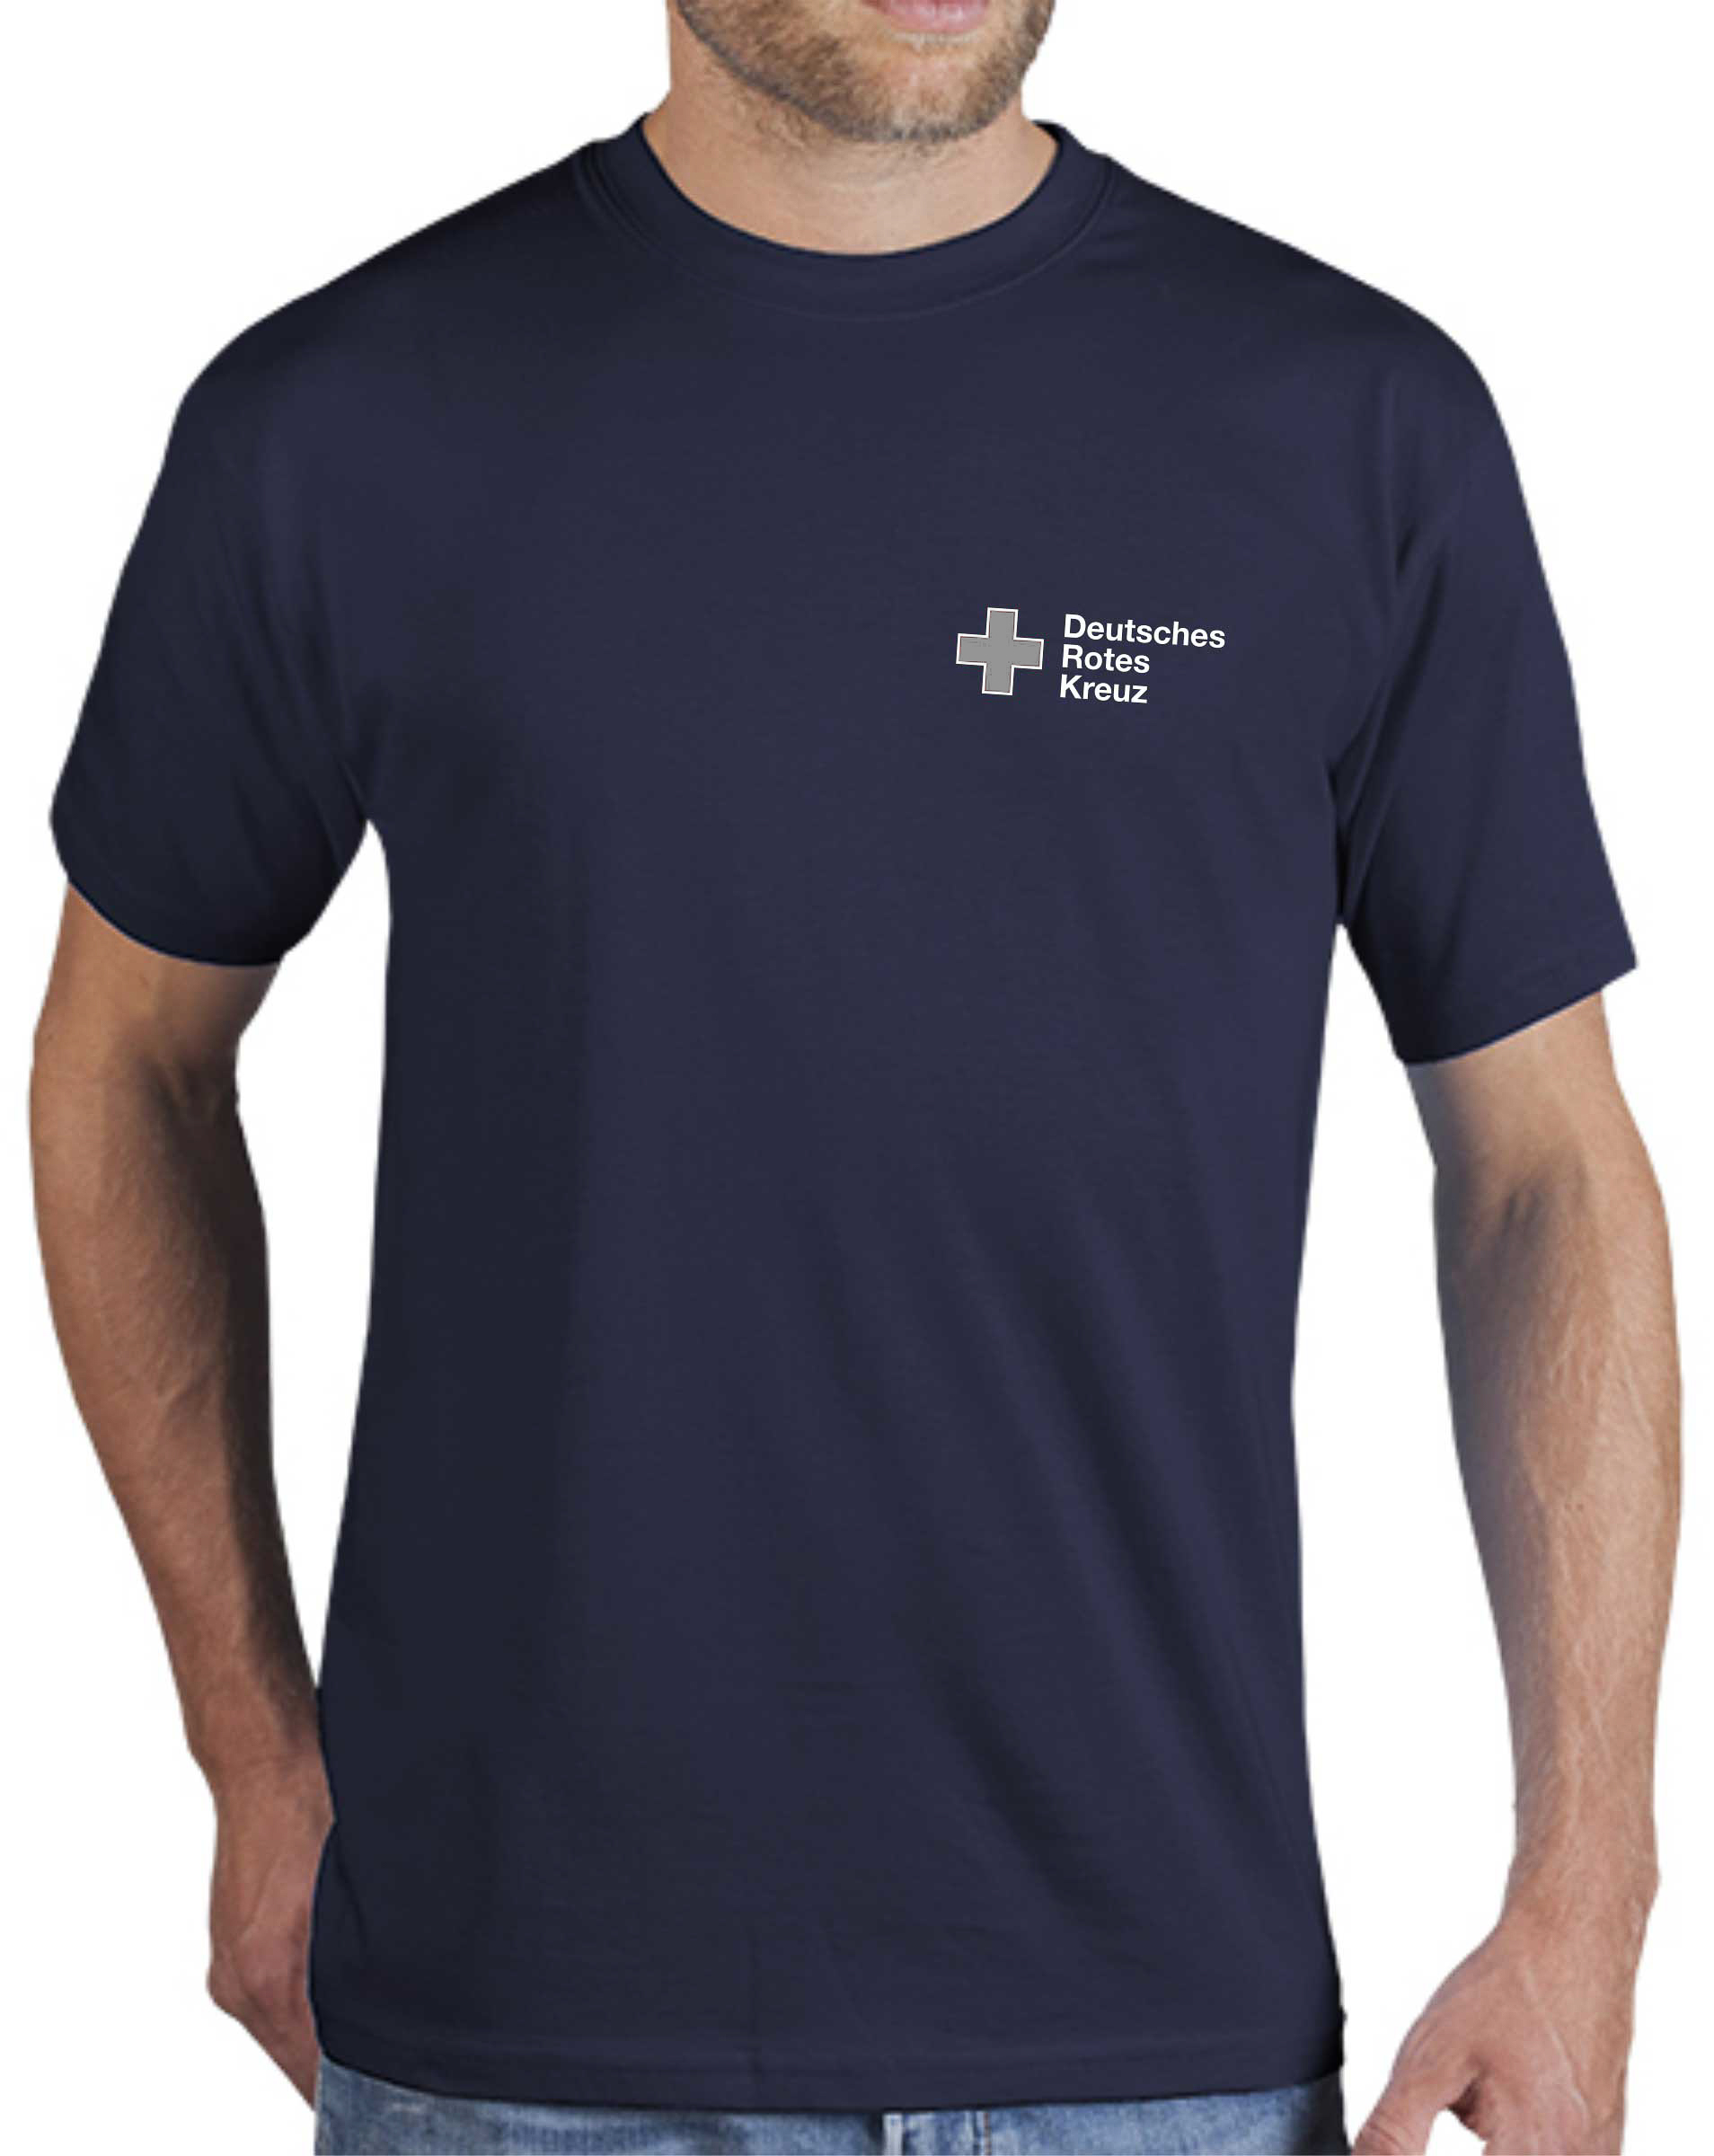 DRK T-Shirt navy Logo Stick